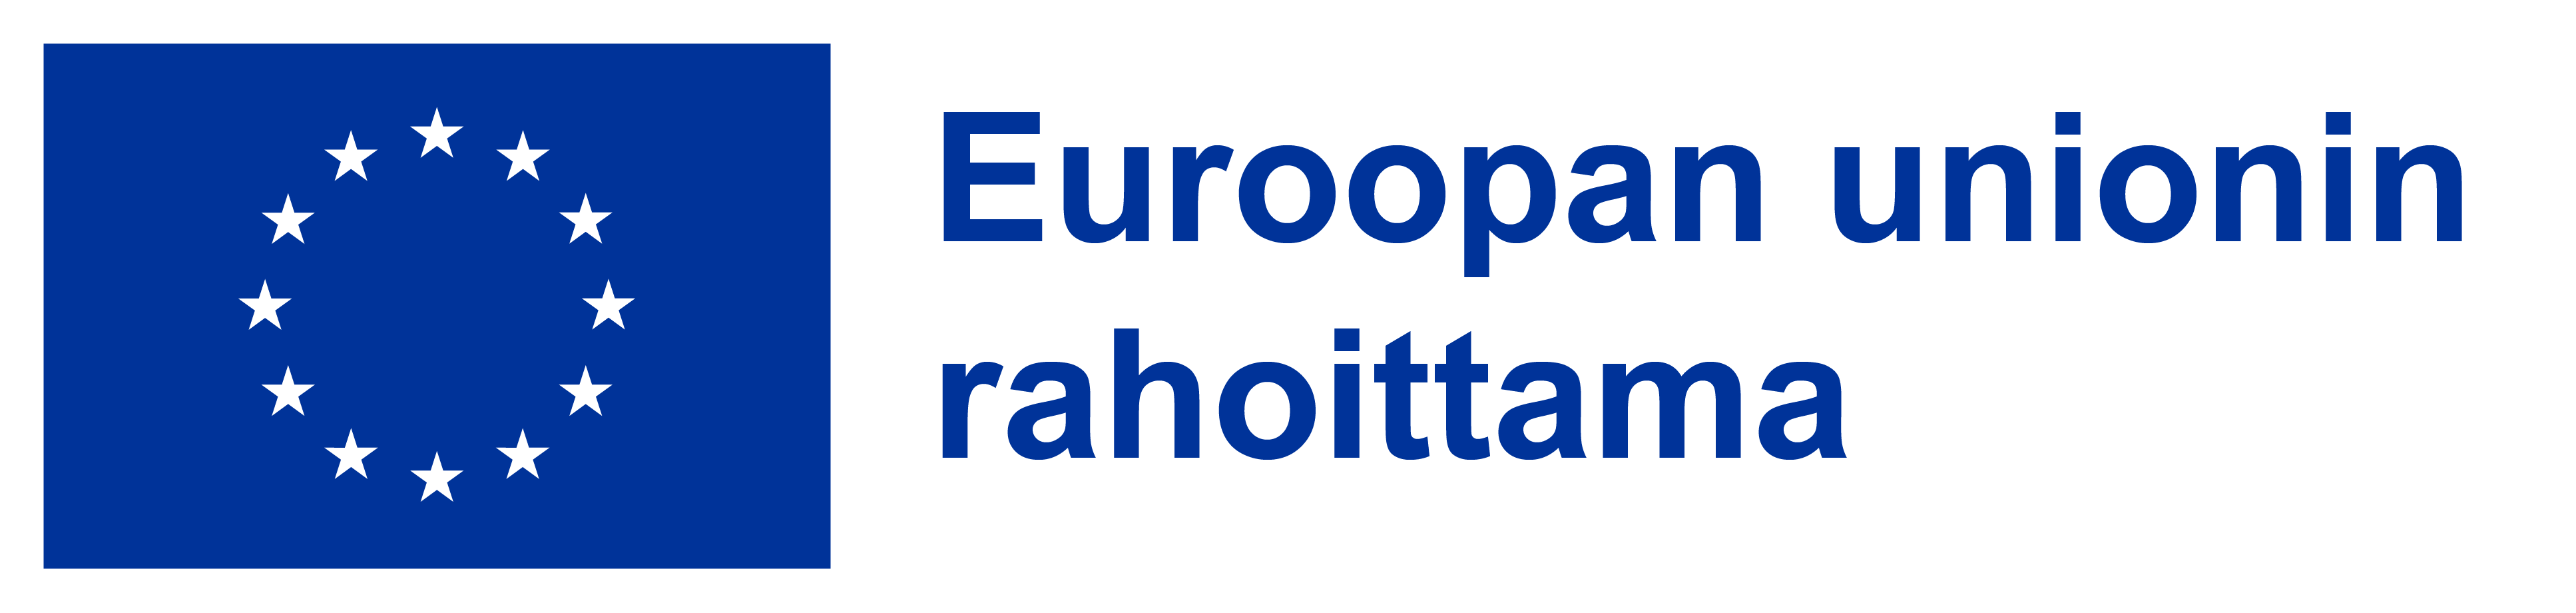 Euroopan unionin rahoittama - logo